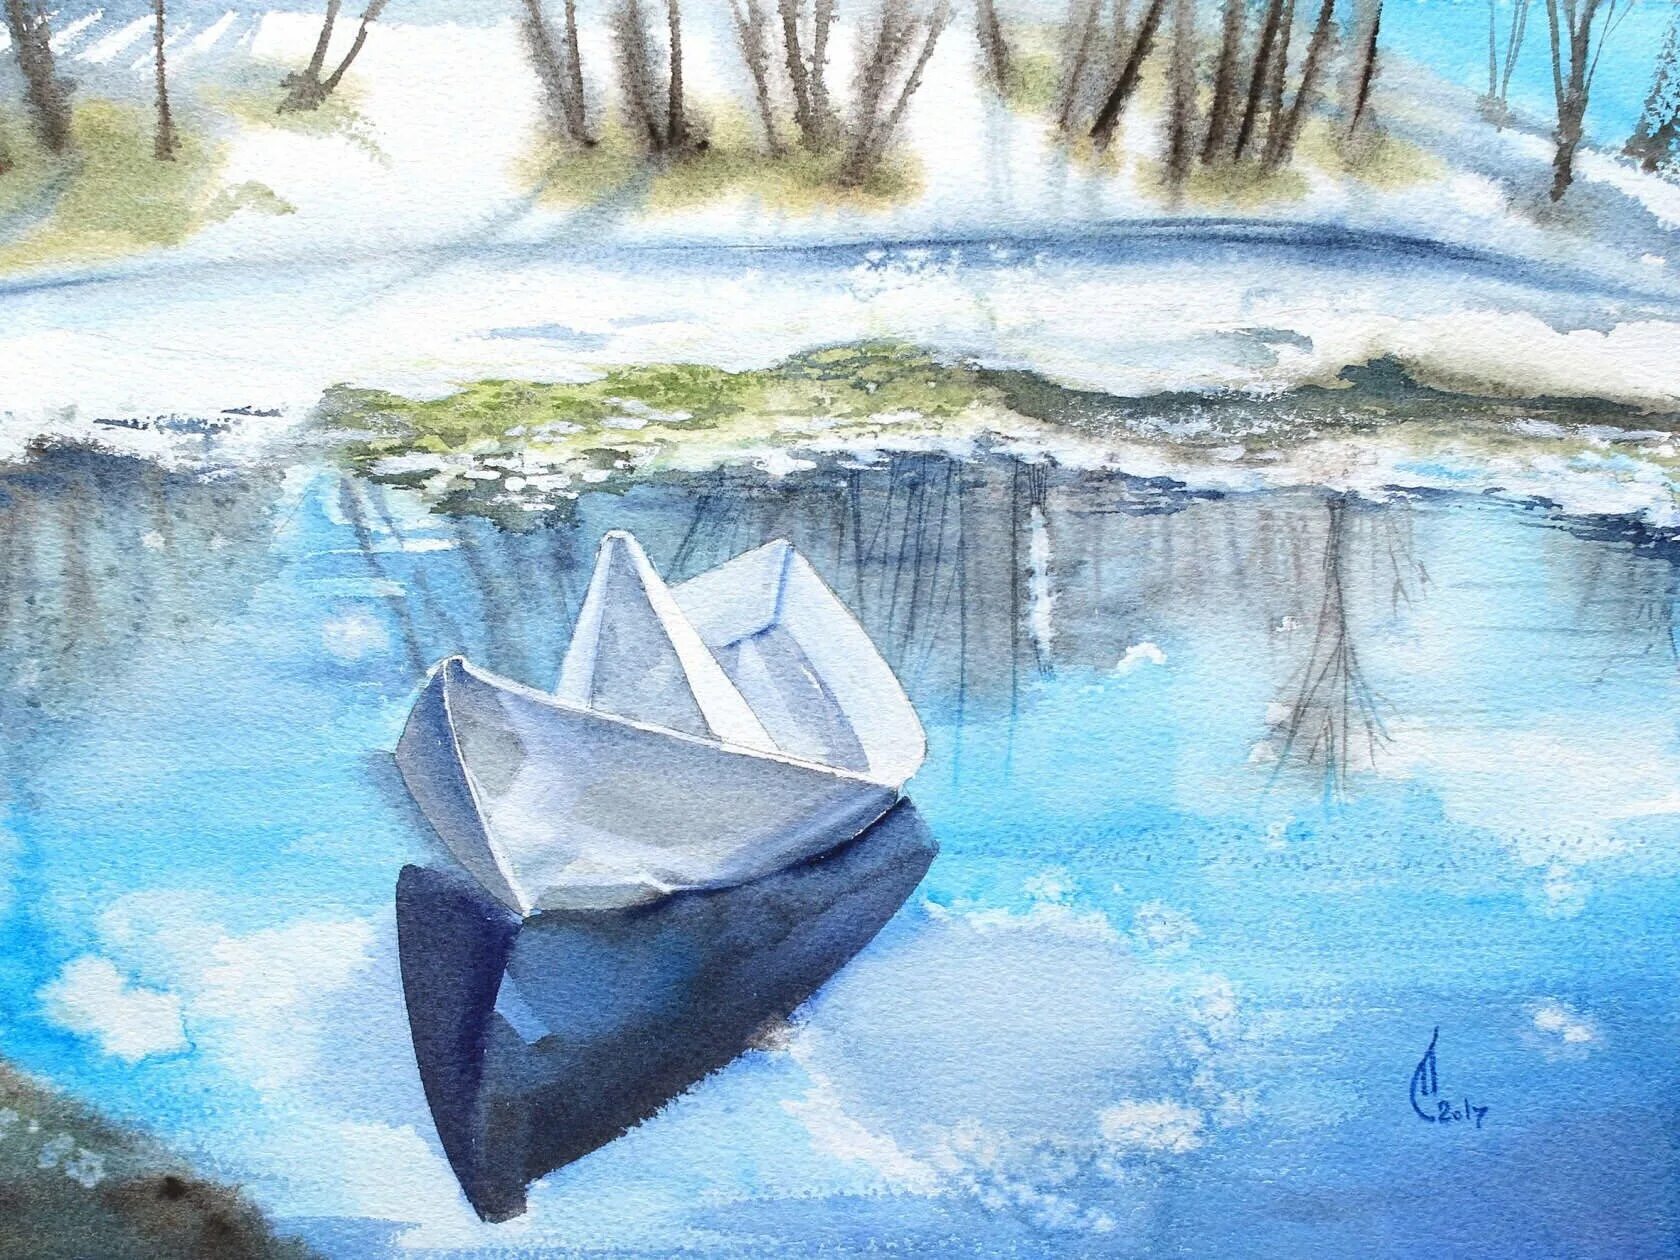 Кораблик из бумаги я по ручью пустил. Бумажный кораблик в ручье. Весенний бумажный кораблик. Весенние ручьи акварель. Весенние кораблики.